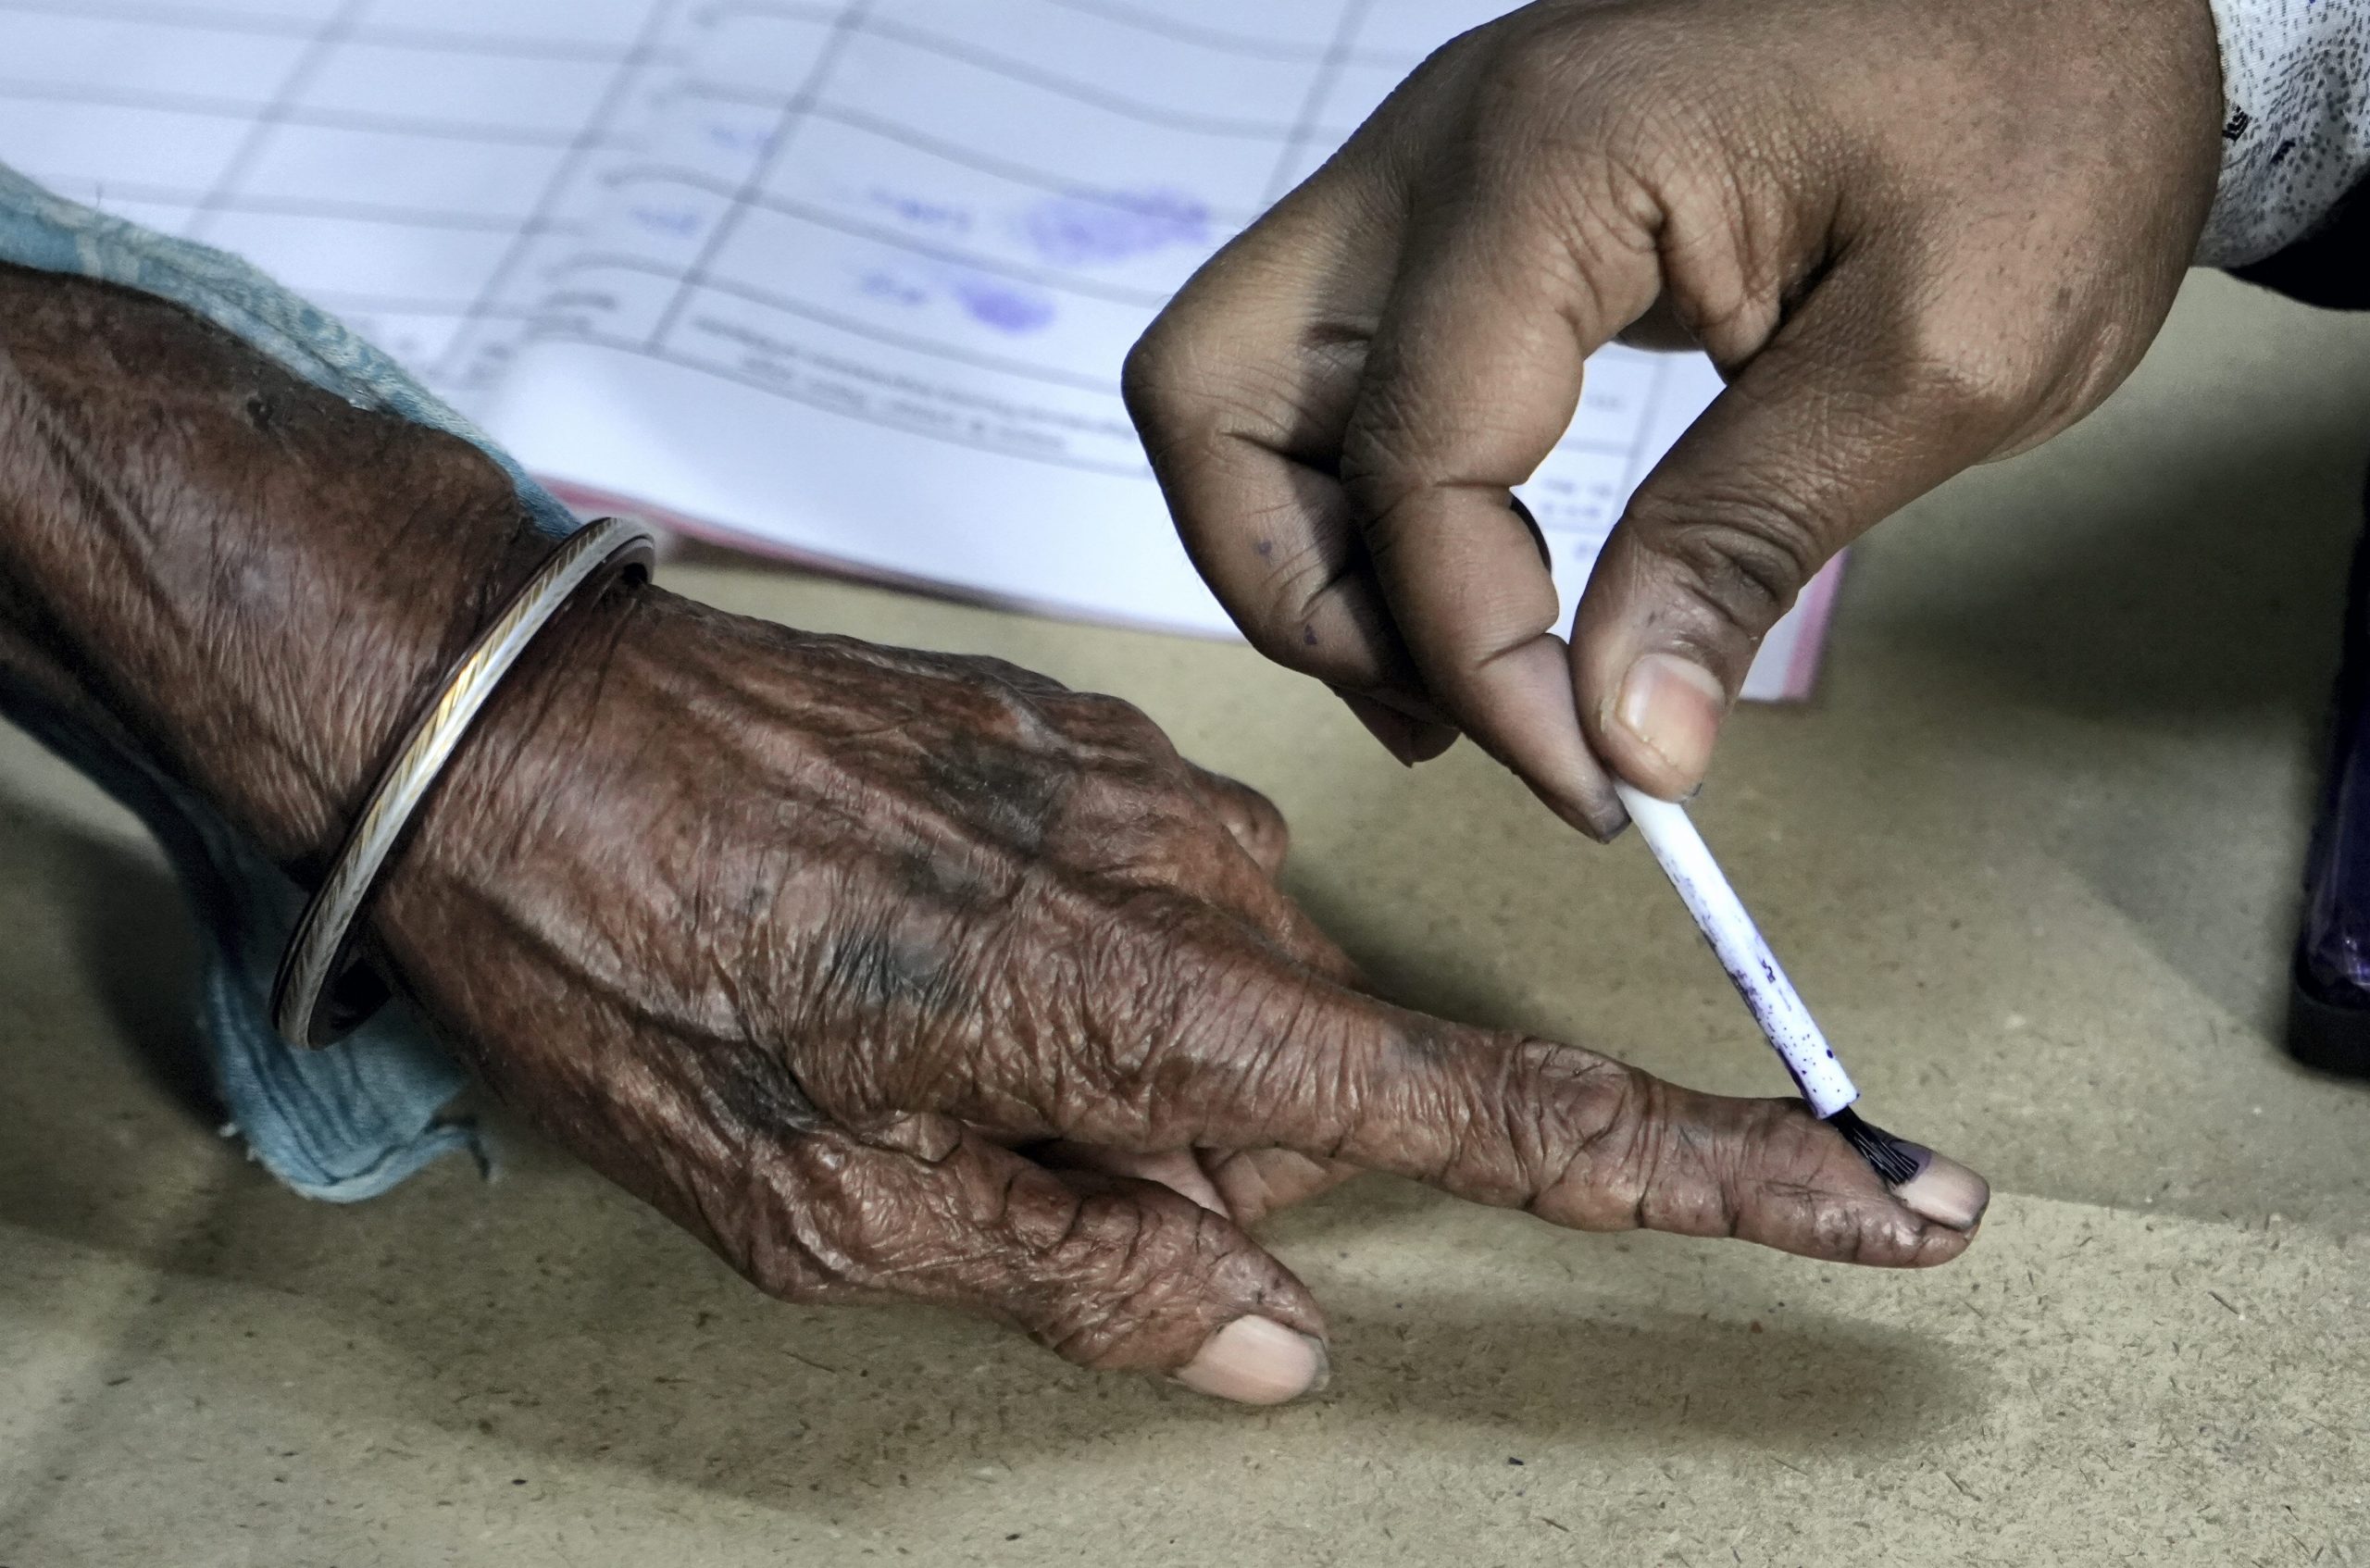 गुजरात विधानसभा चुनाव के दूसरे चरण में कितने प्रतिशत मतदान हुआ है?